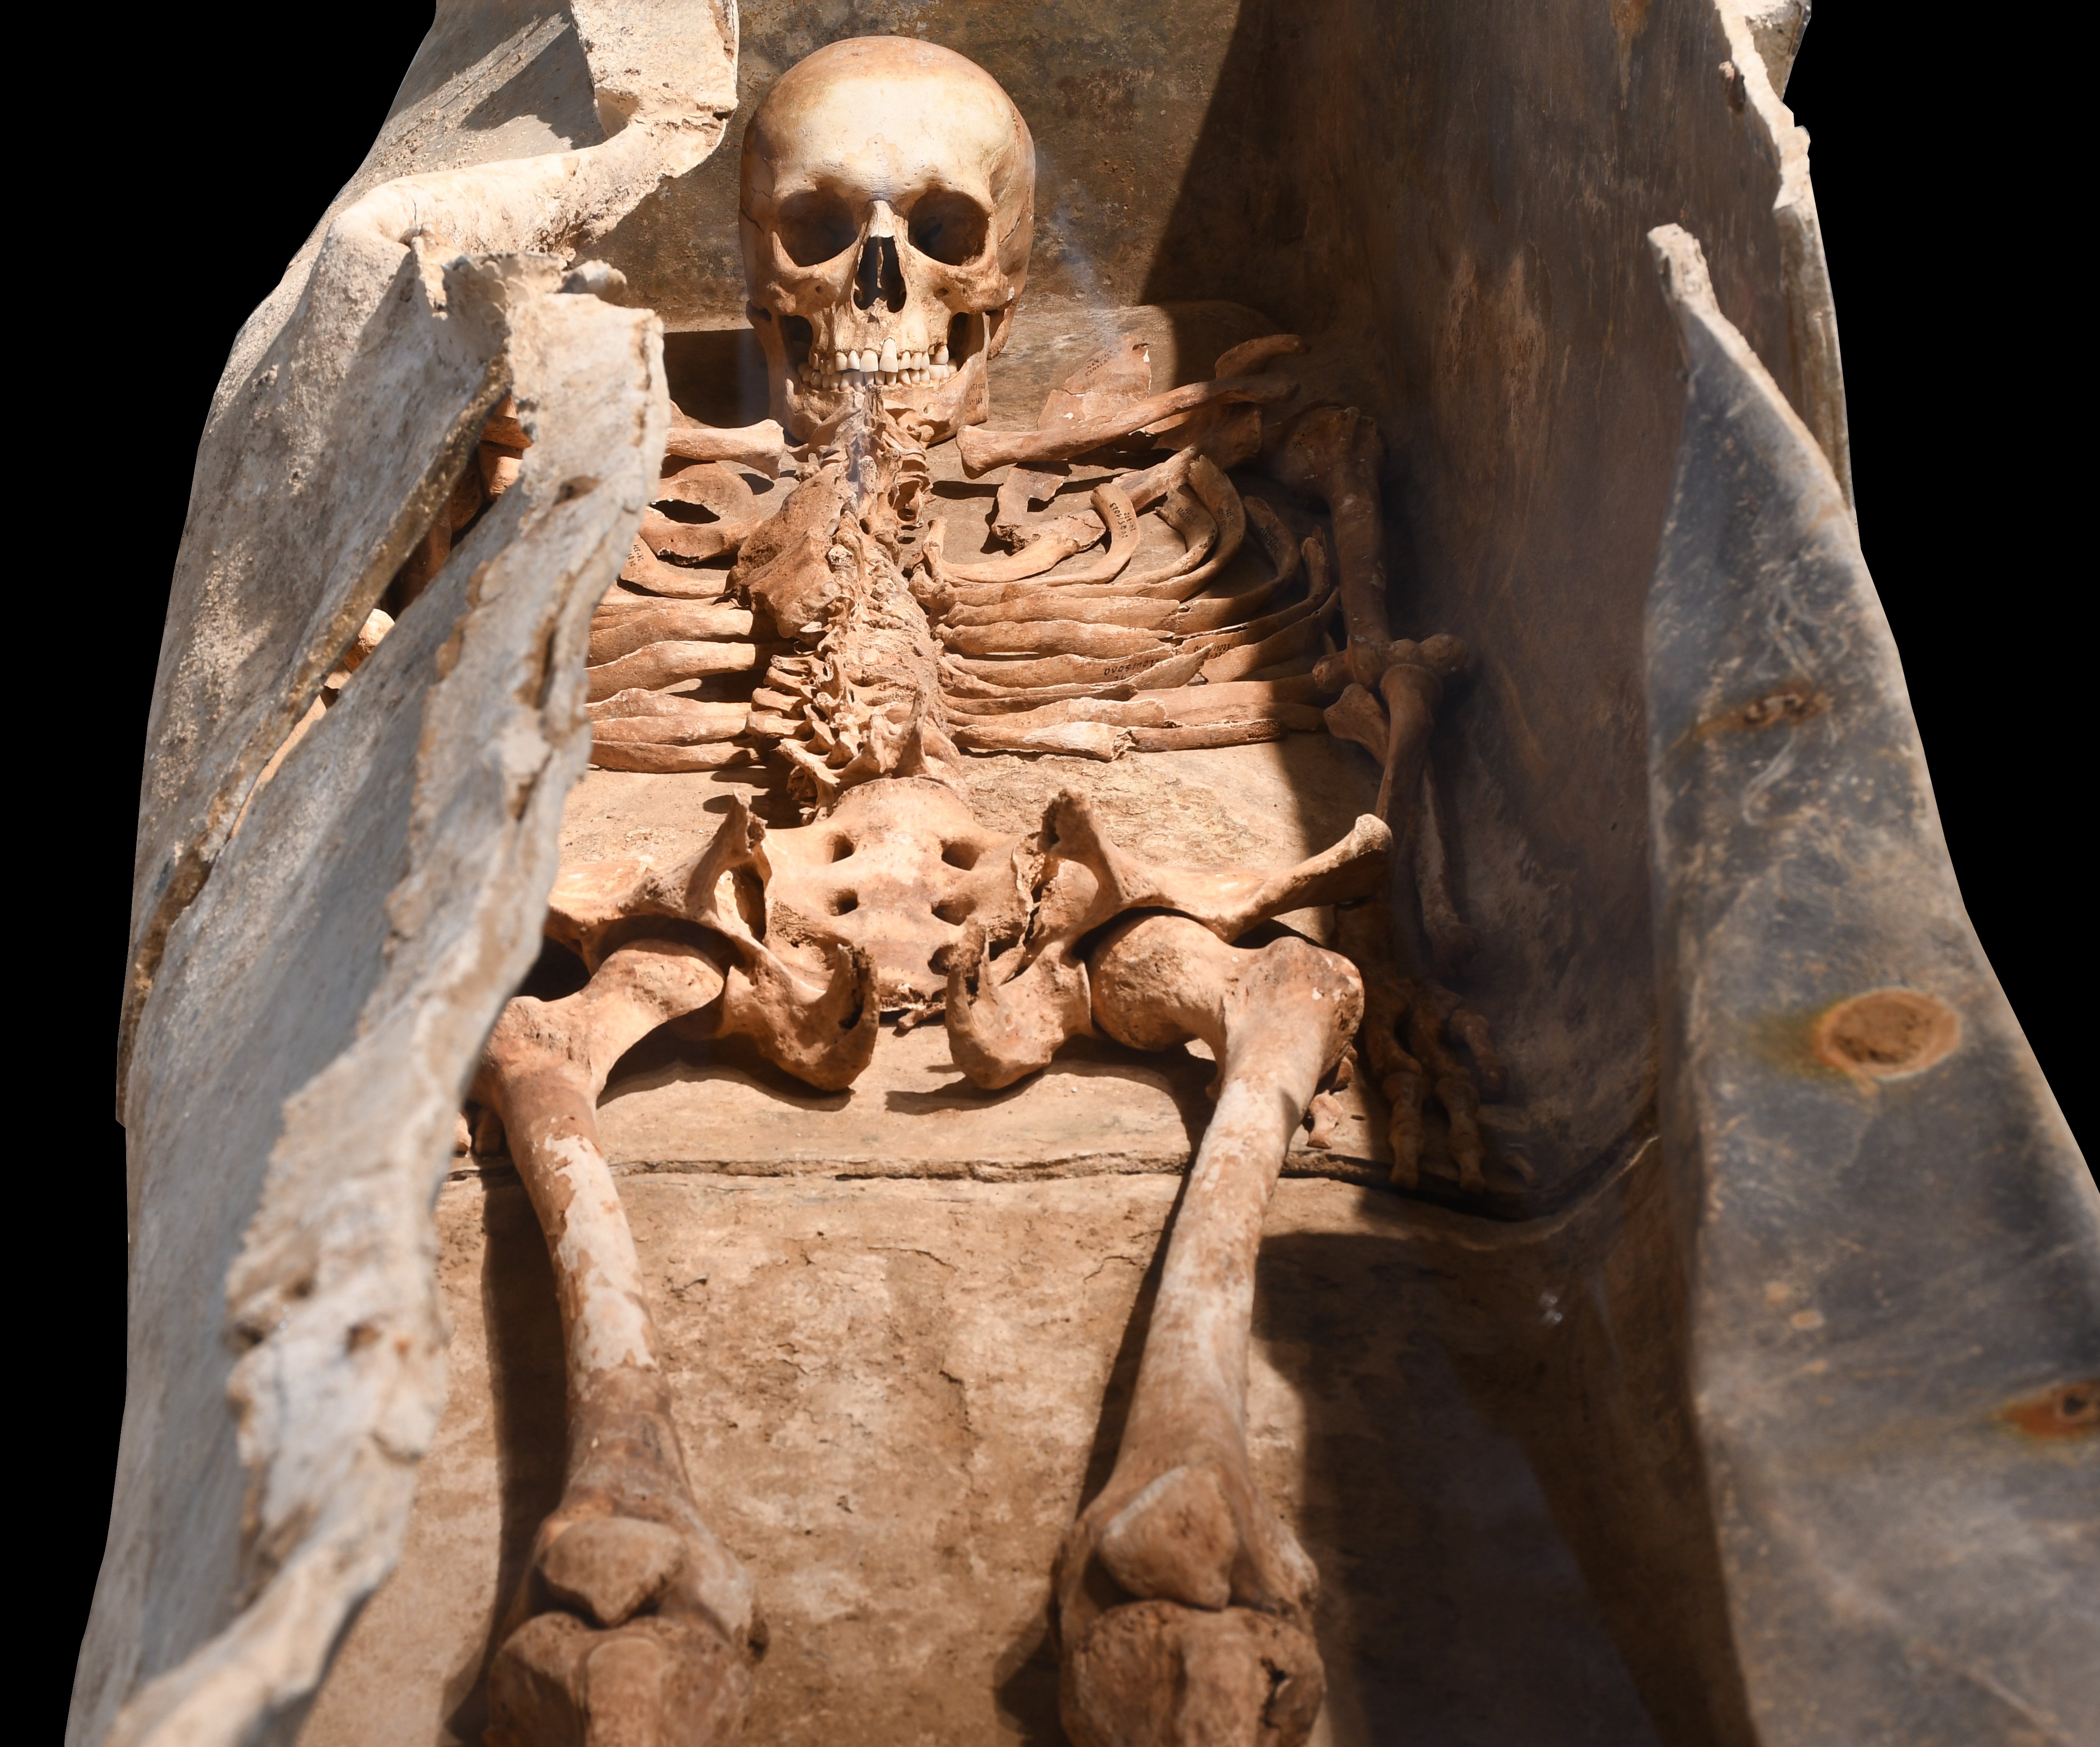 Bleifutter mit männlichem Skelett (Kulturzentrum Sinsteden des Rhein-Kreises Neuss CC BY-NC-ND)